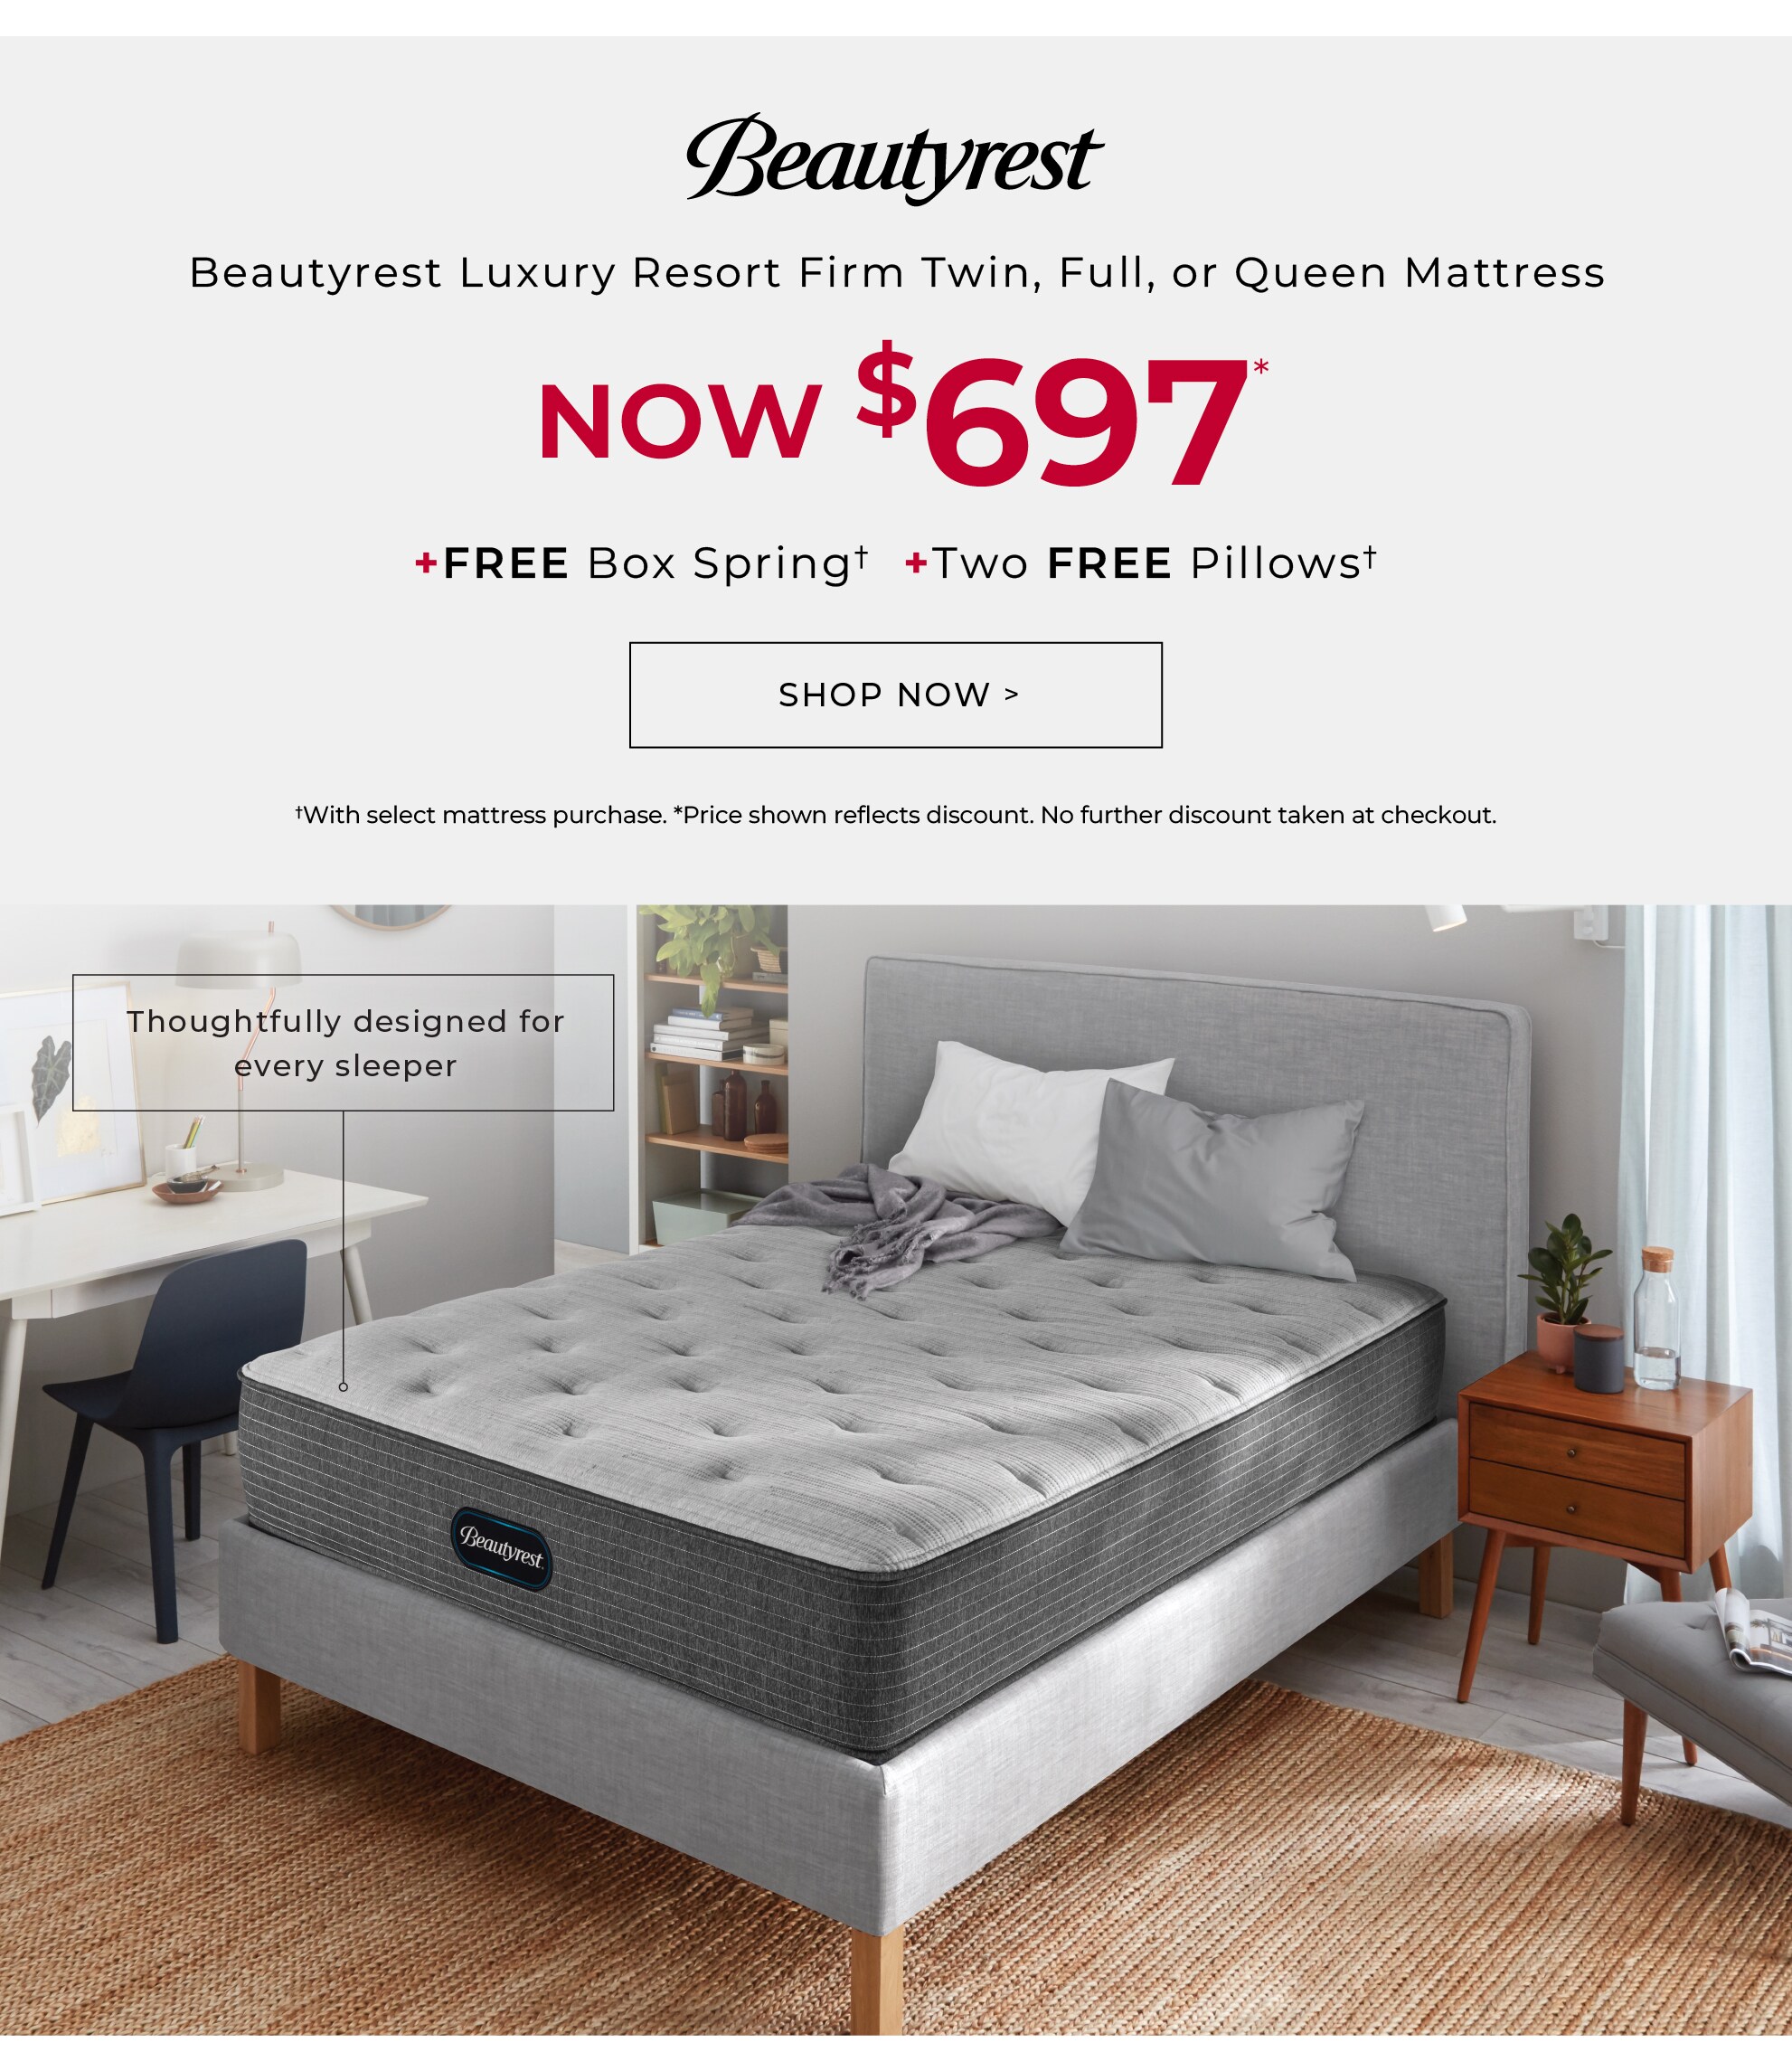 Shop the Beautyrest Luxury Resort mattress deals.